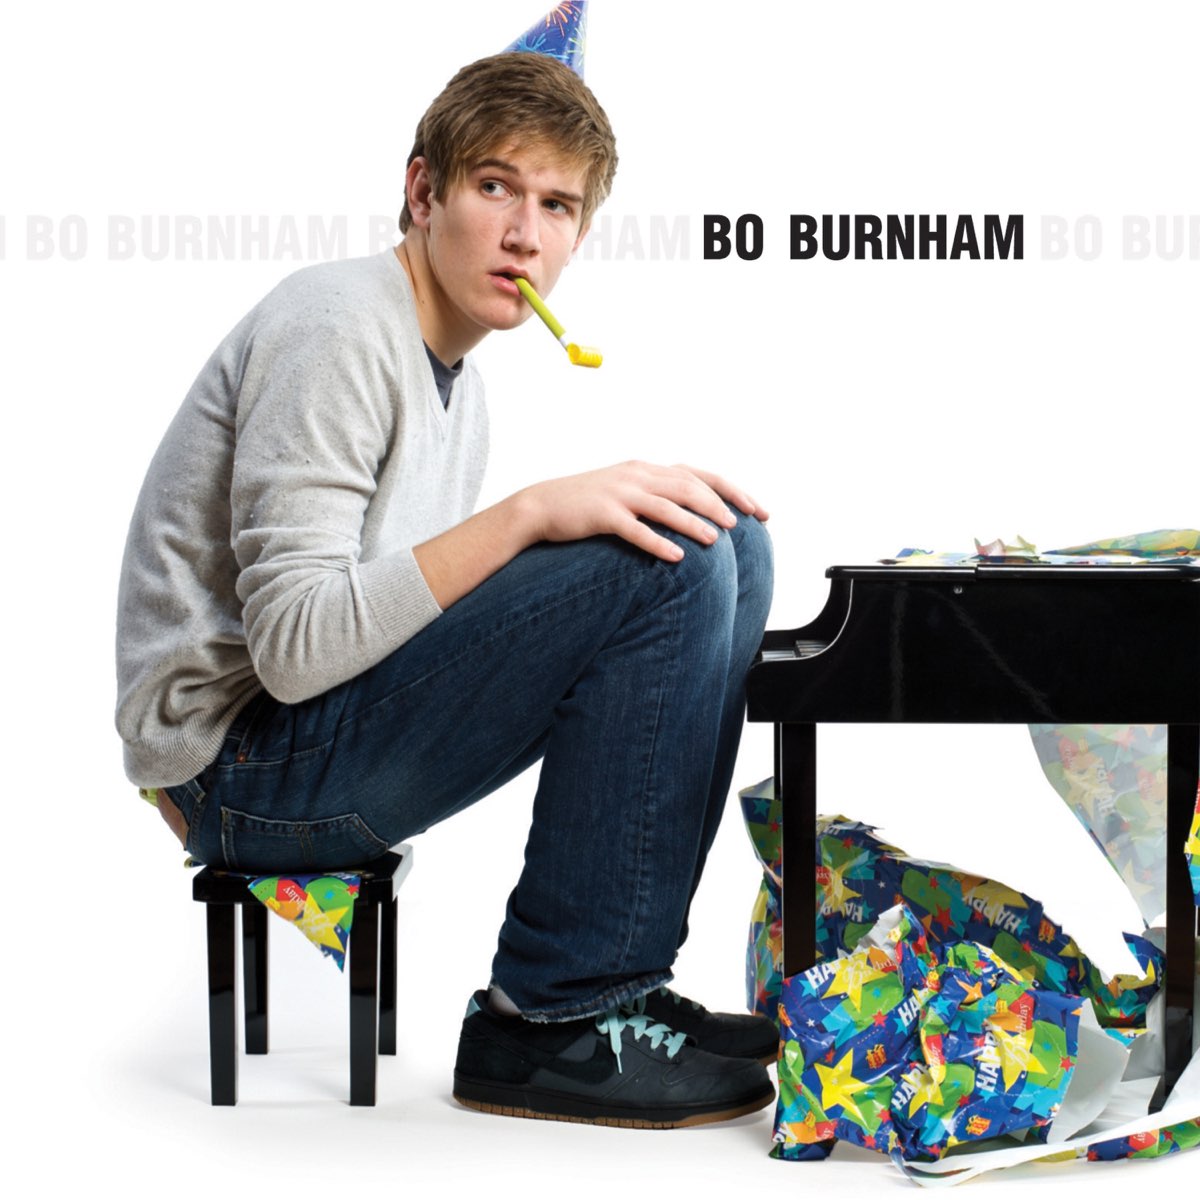 Bo Burnham - Album by Bo Burnham - Apple Music